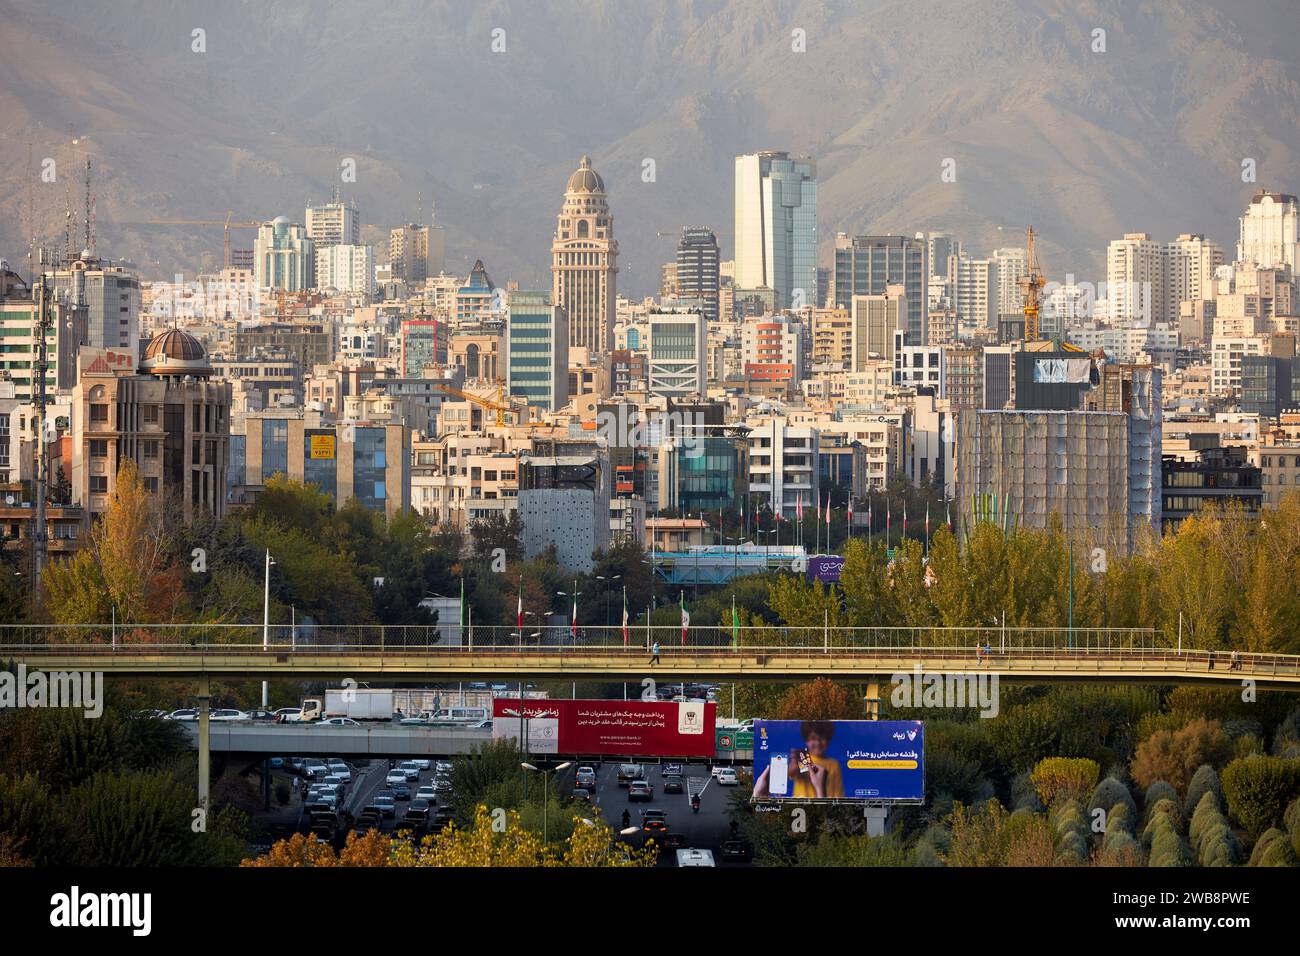 Panoramablick auf den nördlichen Teil der Stadt Teheran von der Tabiat-Brücke. Teheran, Iran. Stockfoto